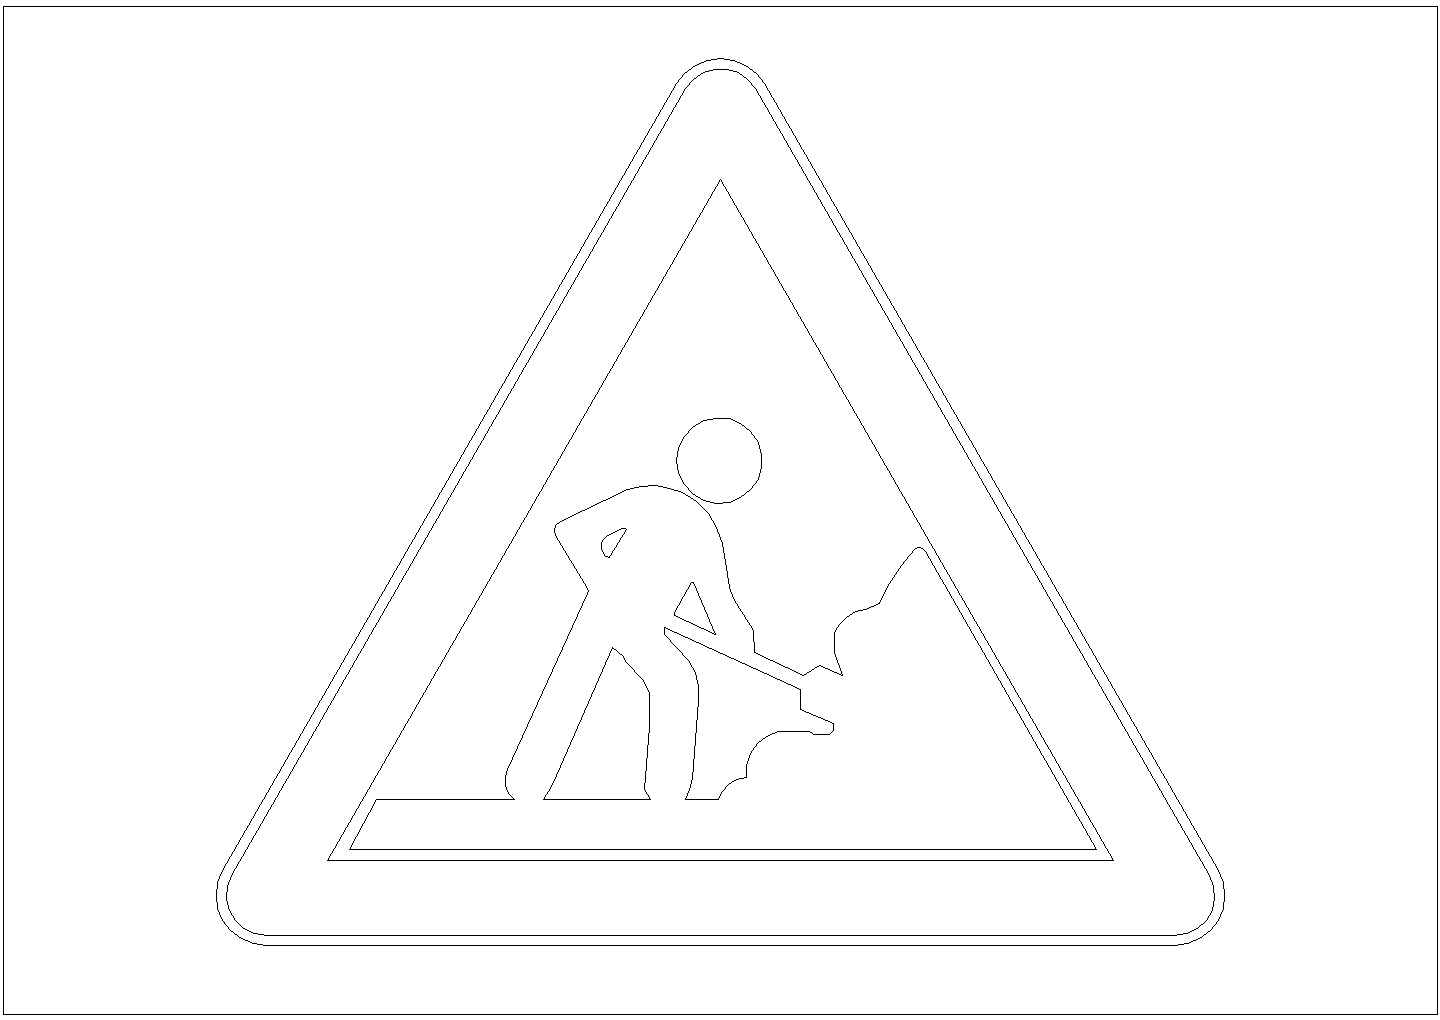 某警告标志CAD详细完整构造图